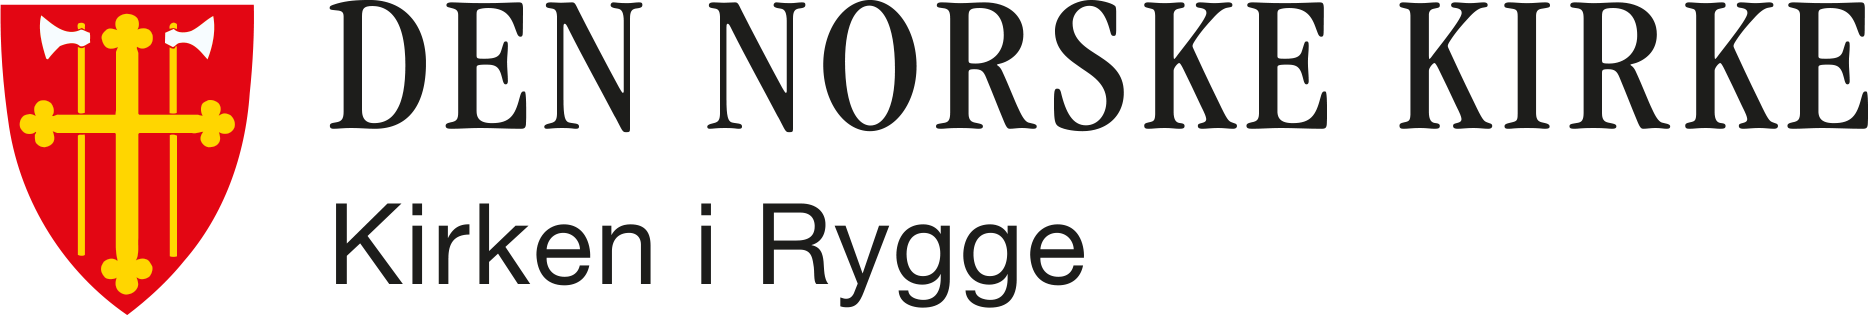 Rygge og Ekholt menigheter logo